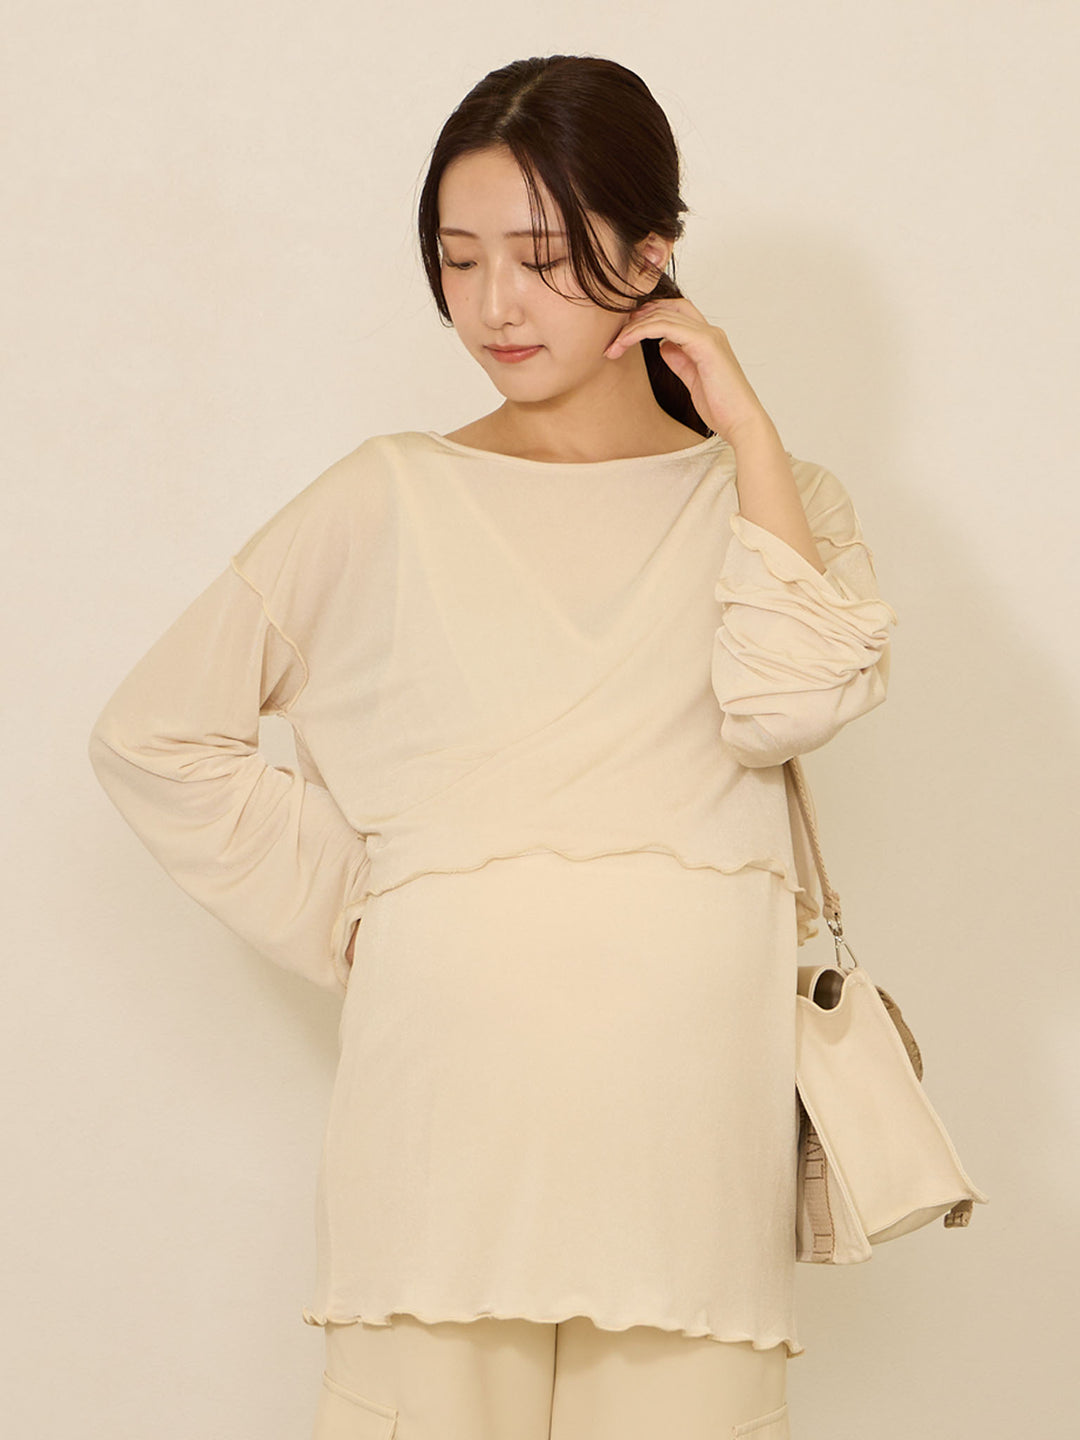 【マタニティ・授乳服】メローデザインシアーTシャツ Ivory